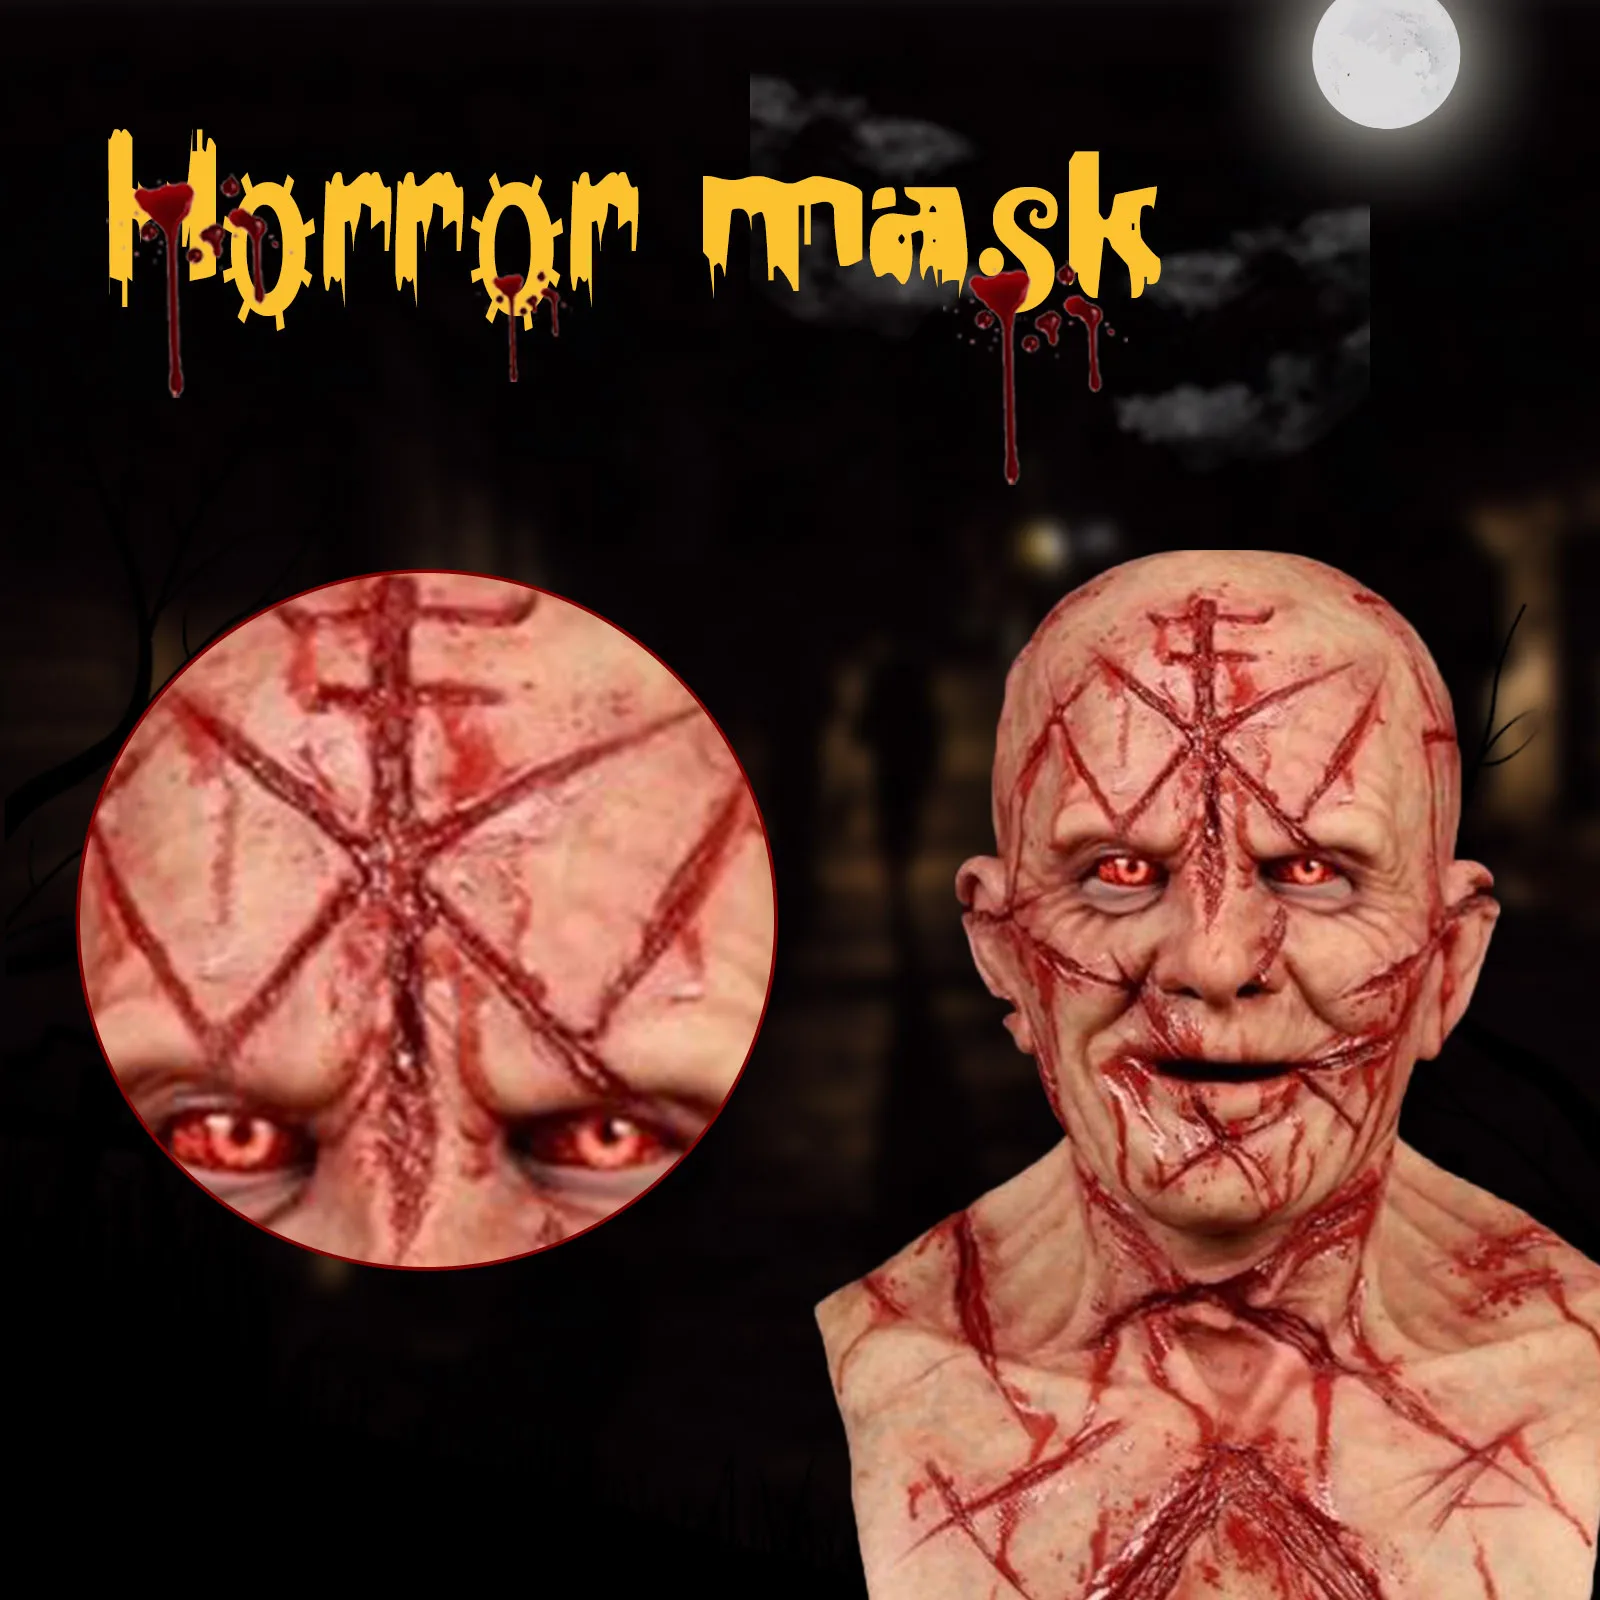 

Bald Blood Scar Mask Scary Horror Bloody Headgear 3D Realistic Human Face Headgear Cosplay Prop Costume Surprise Prank Joke Mask